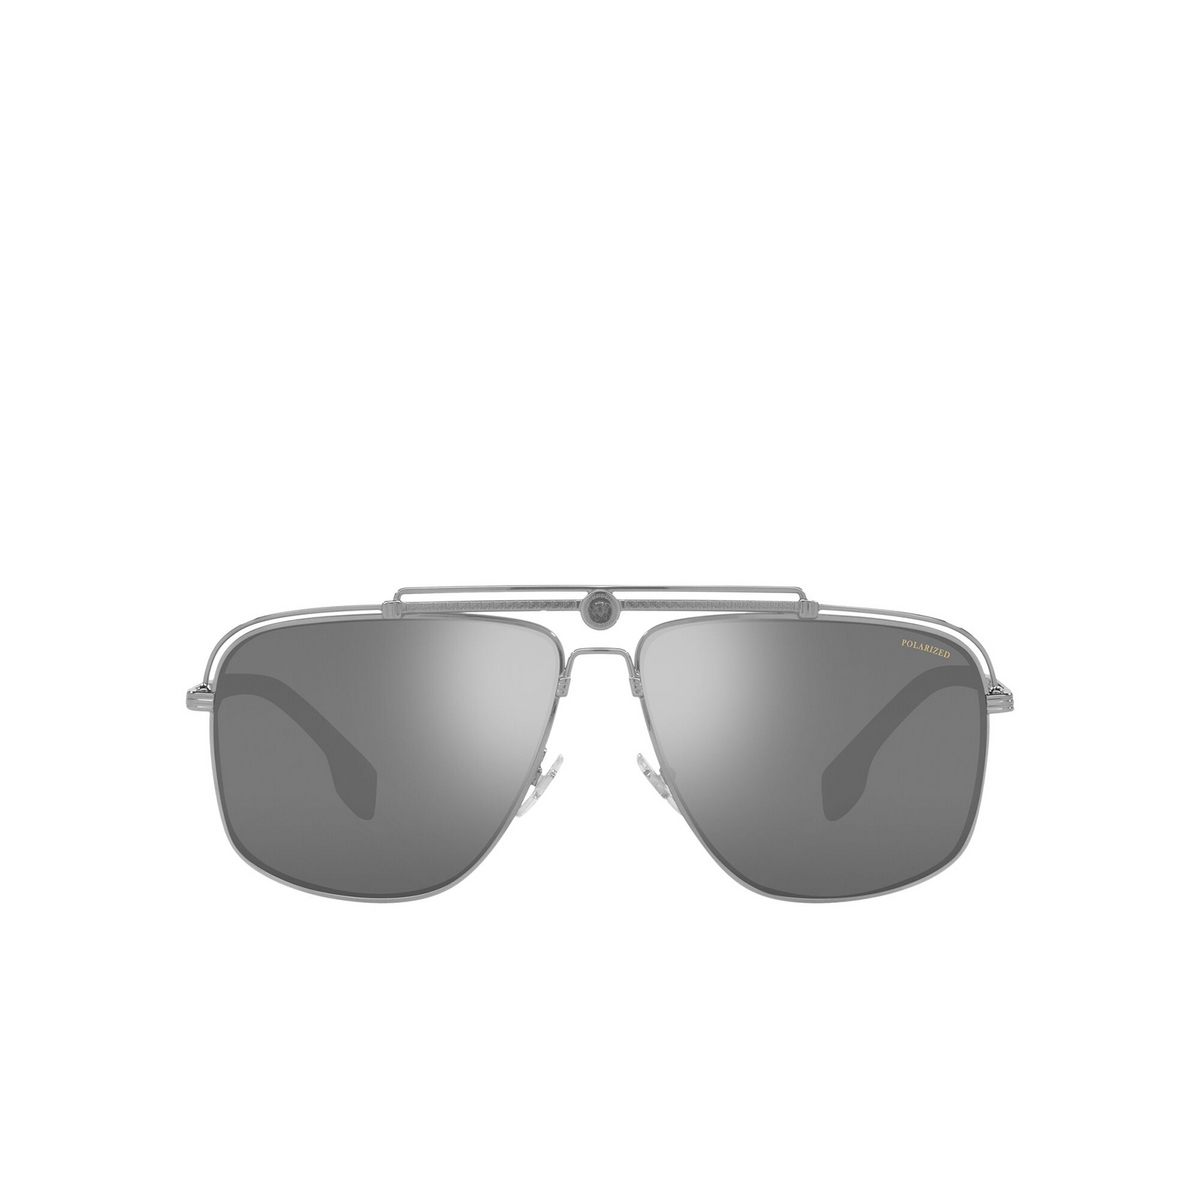 Versace® Square Sunglasses: VE2242 color Gunmetal 1001Z3 - front view.